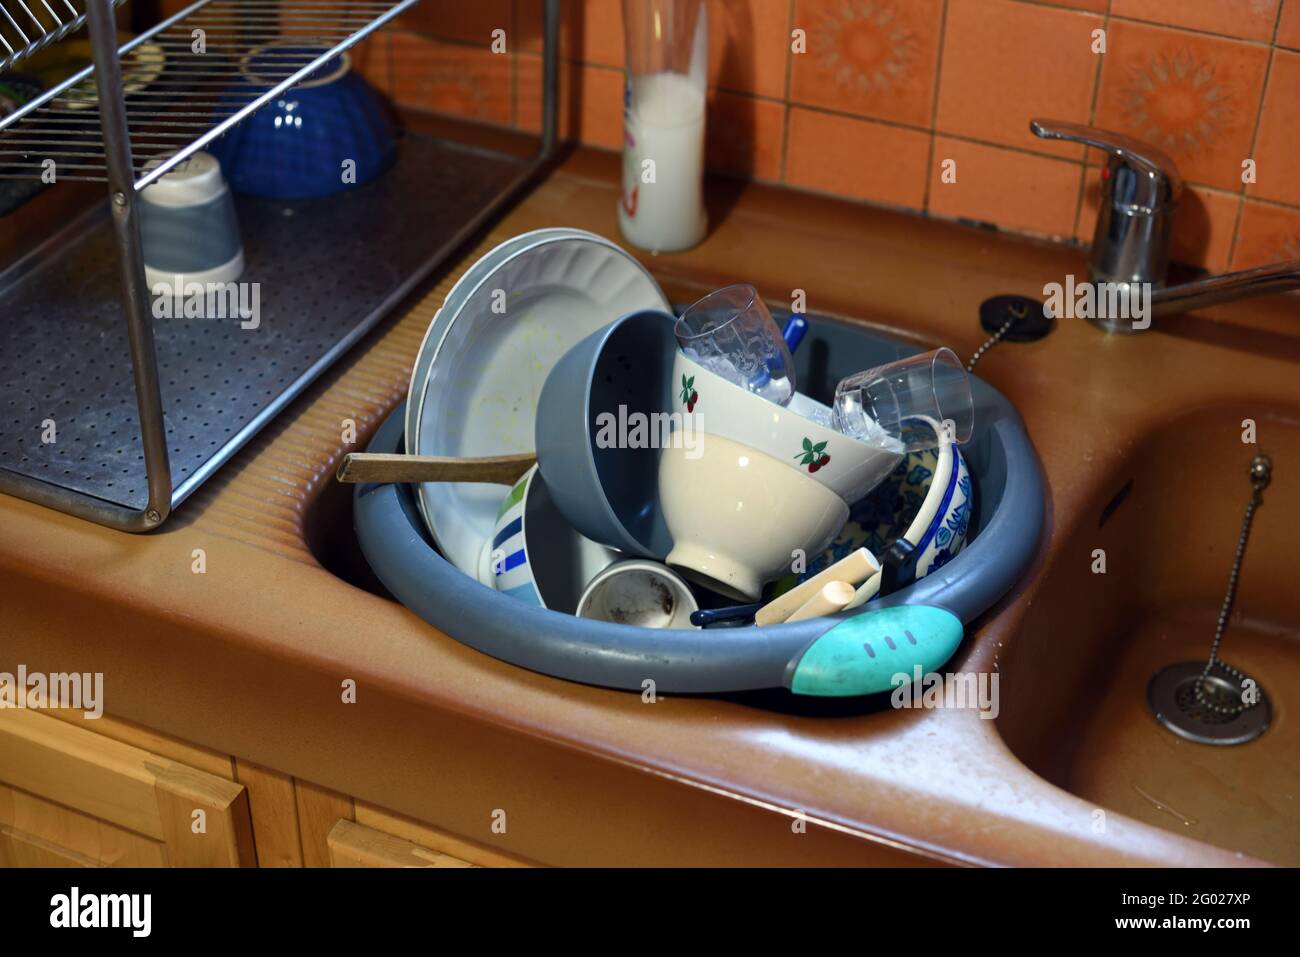 Il lavandino della cucina traboccante di stoviglie sporche, ciotole, piatti e lavatrice Foto Stock